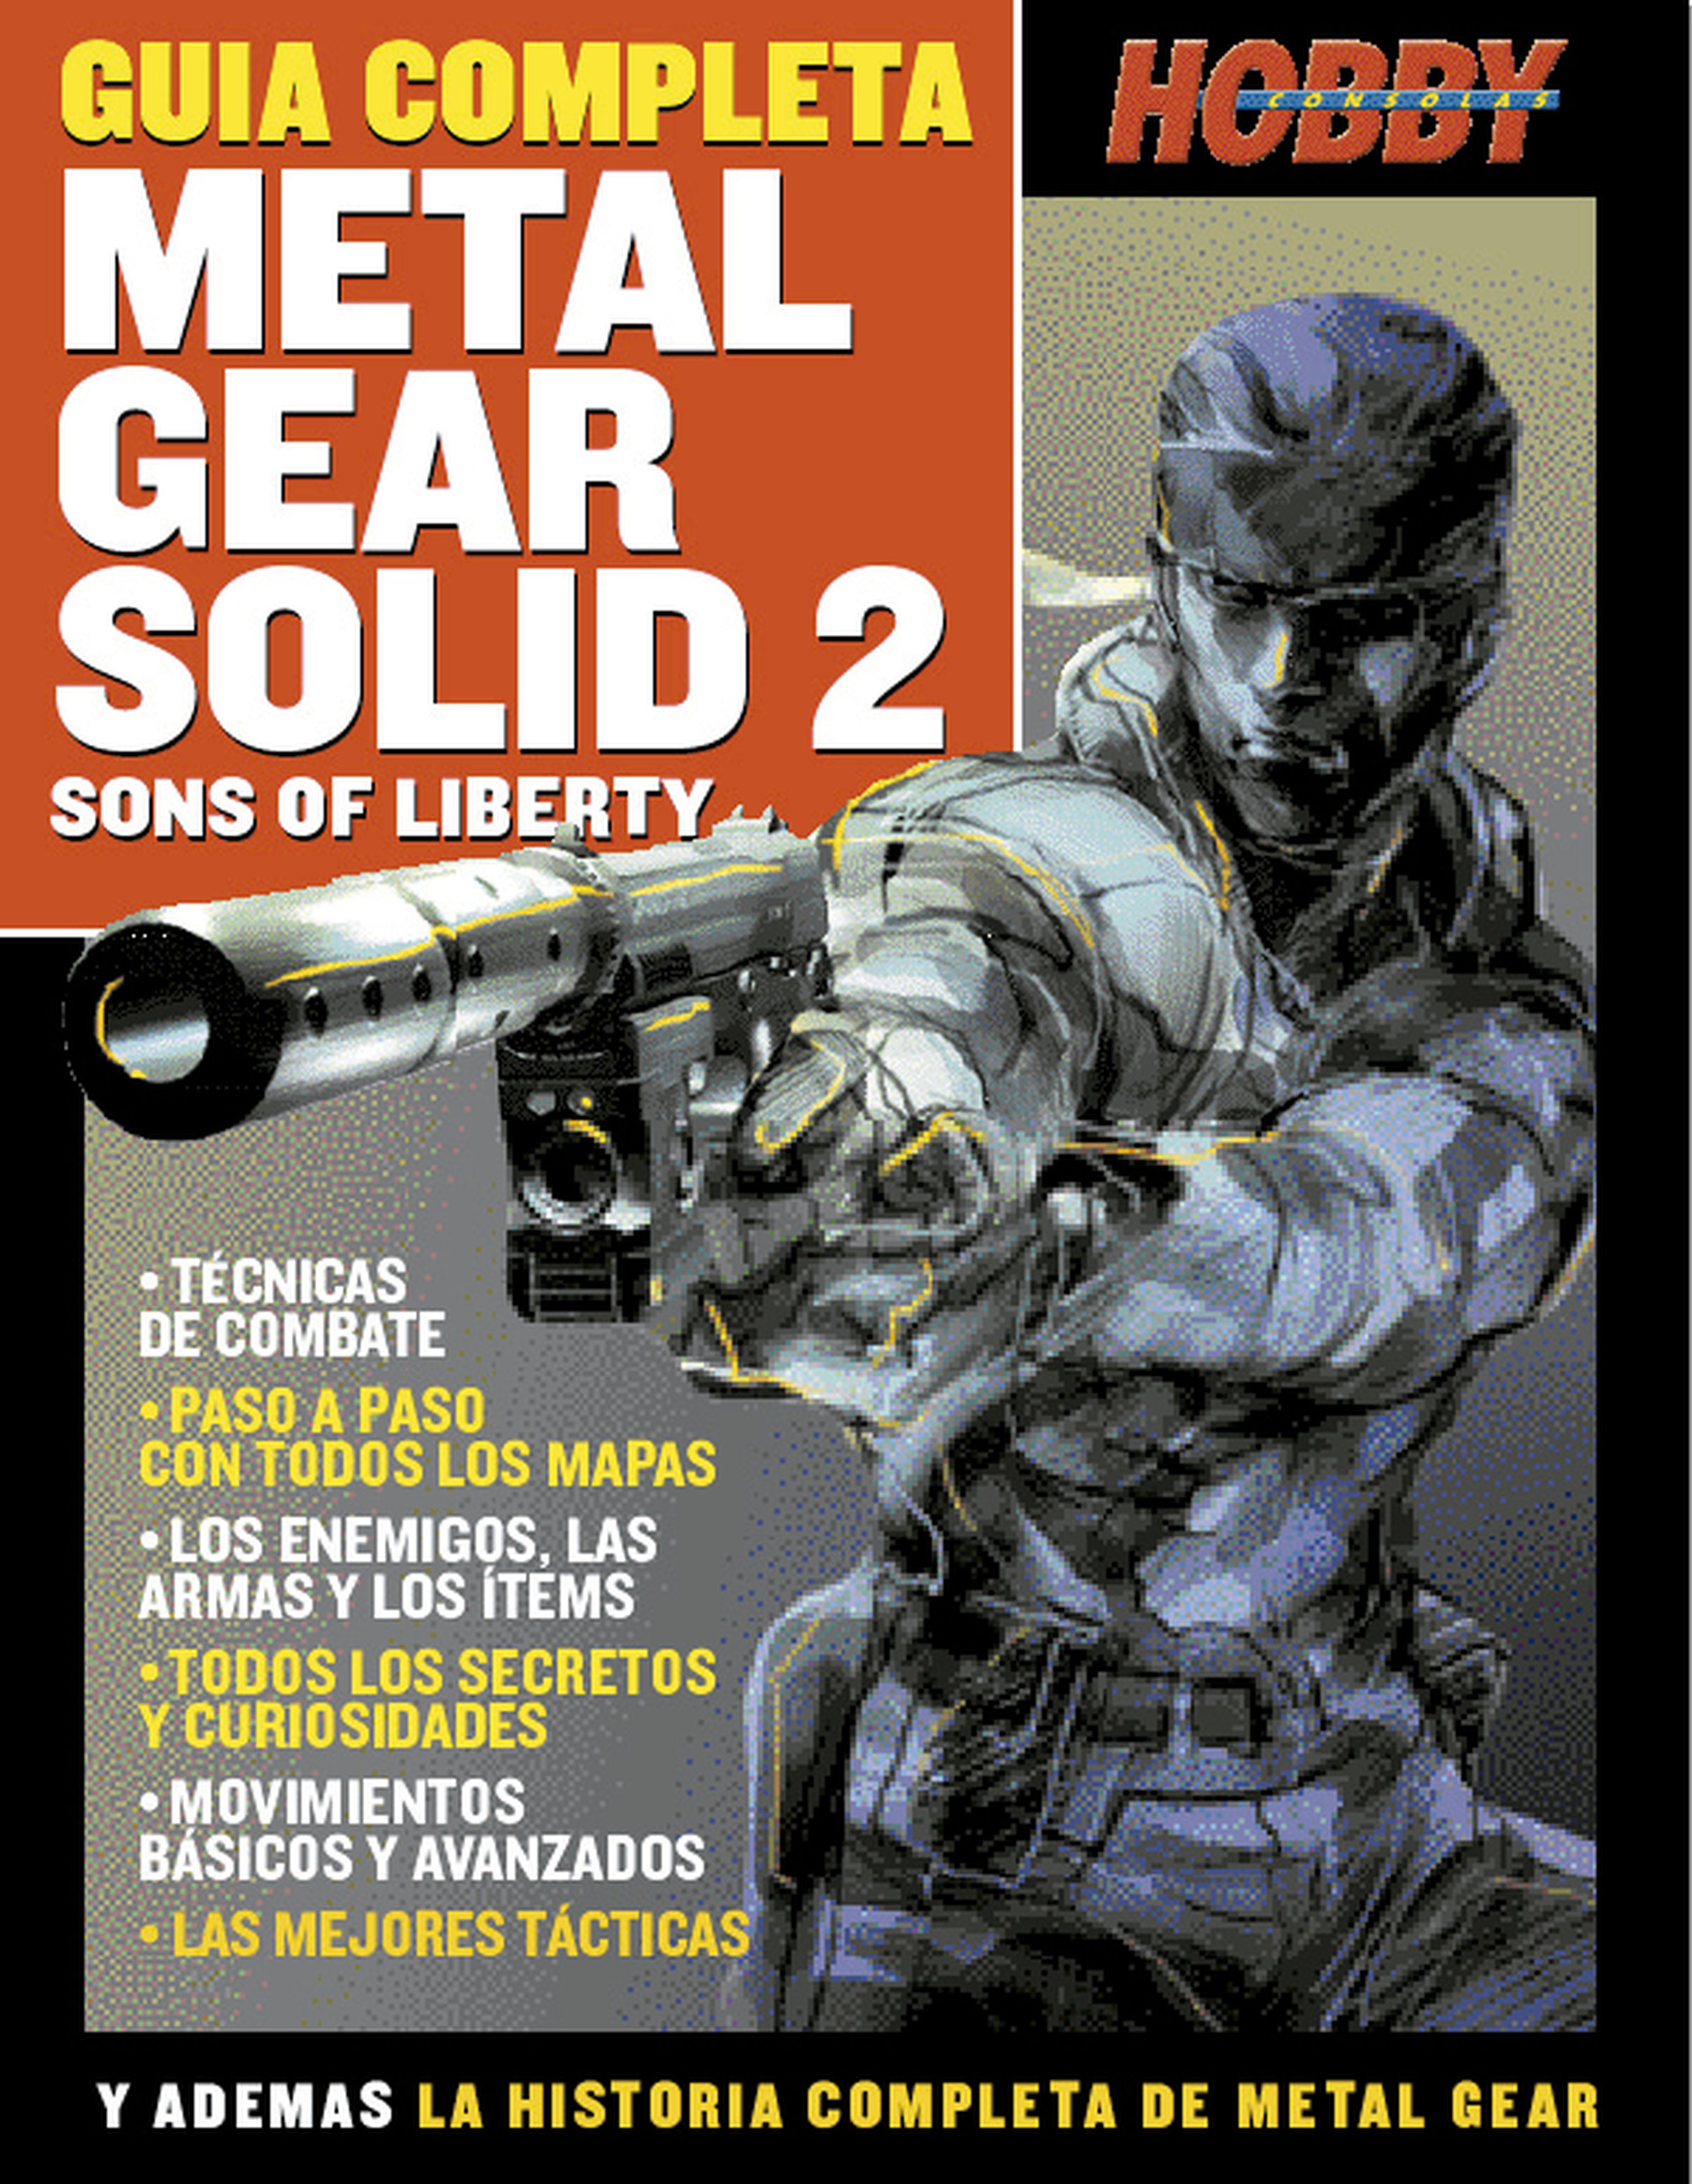 Guías de Metal Gear Solid 2 en Hobby Consolas